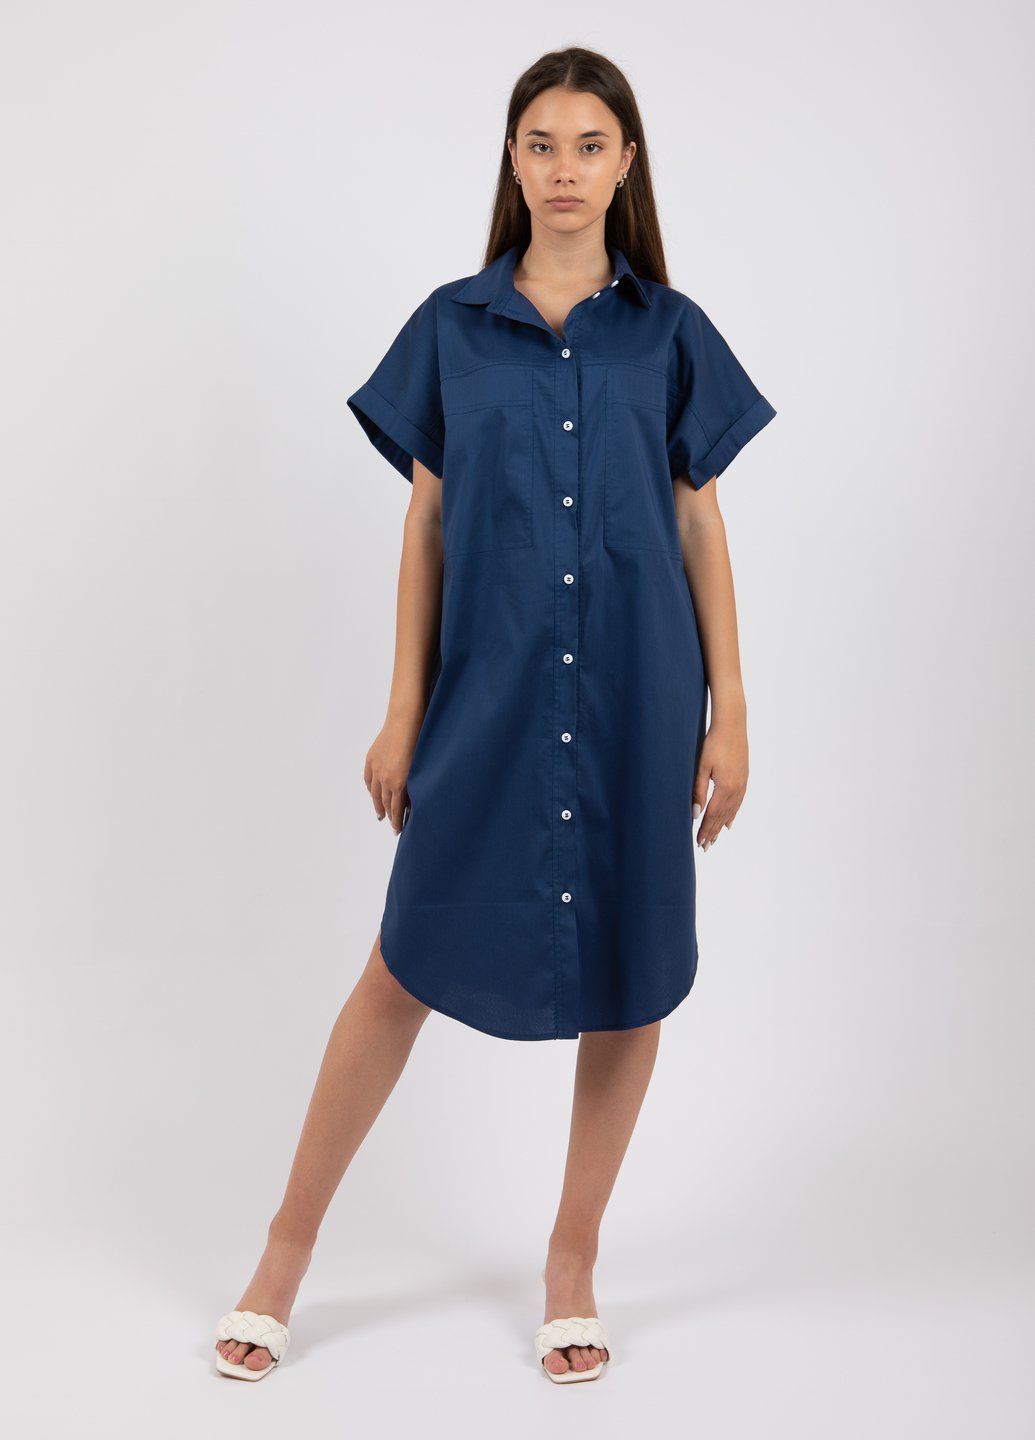 Купить Оверсайз хлопковое платье-рубашка Merlini Руан 700000004 - Синий, 42-44 в интернет-магазине